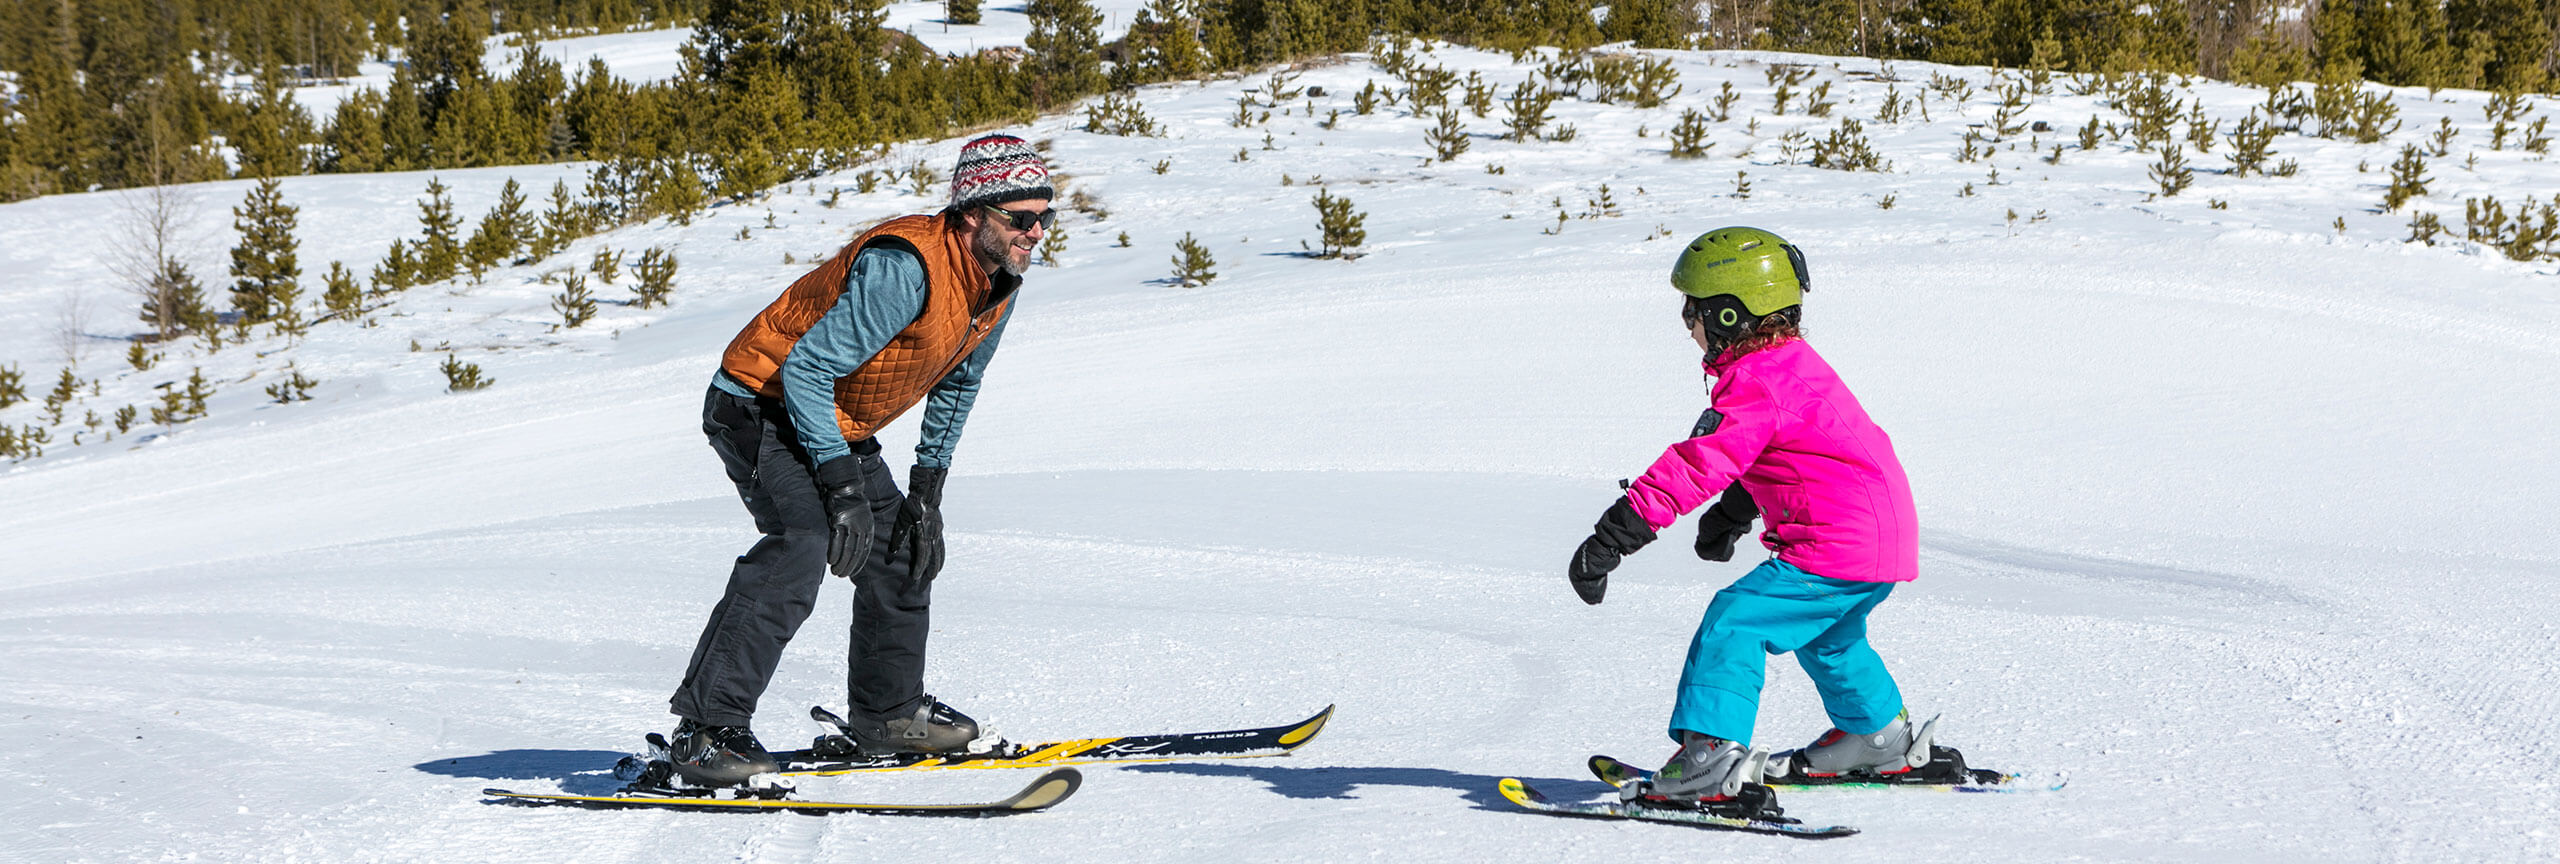 Man skiing backwards looking up hill at girl learning to ski